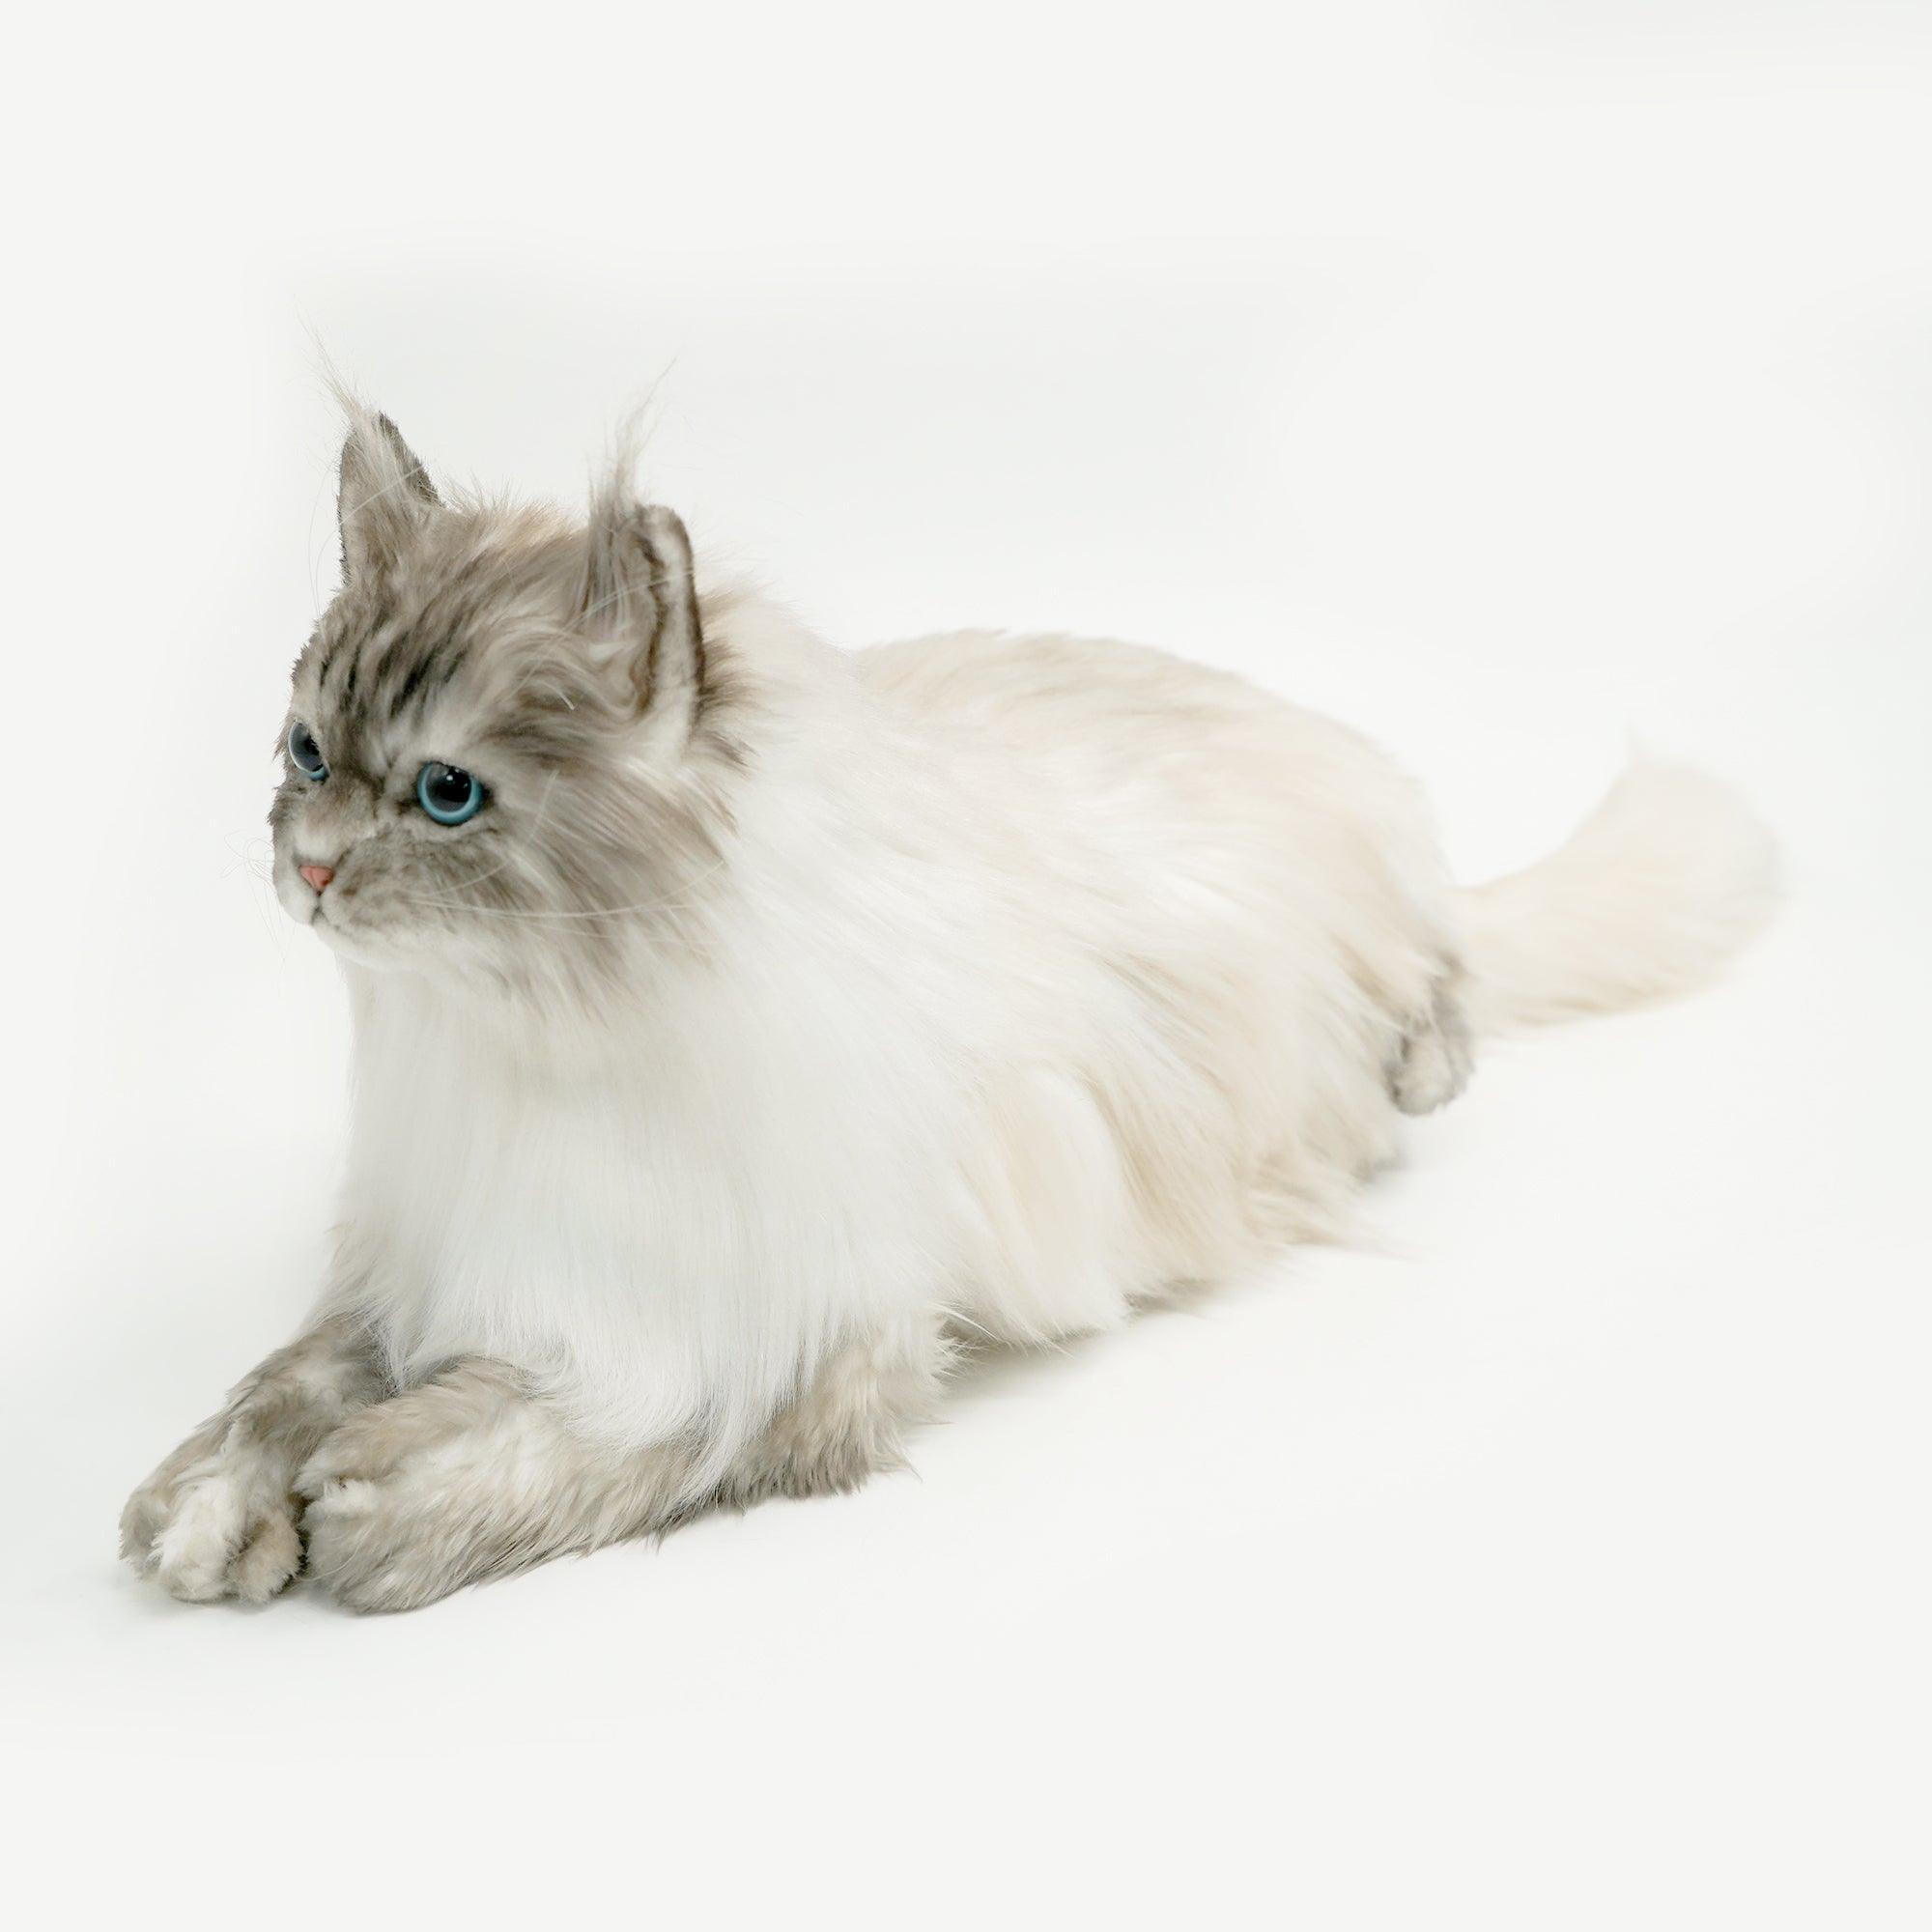 NO.8 Grey Hair Cat with Blue Eyes - Chongker